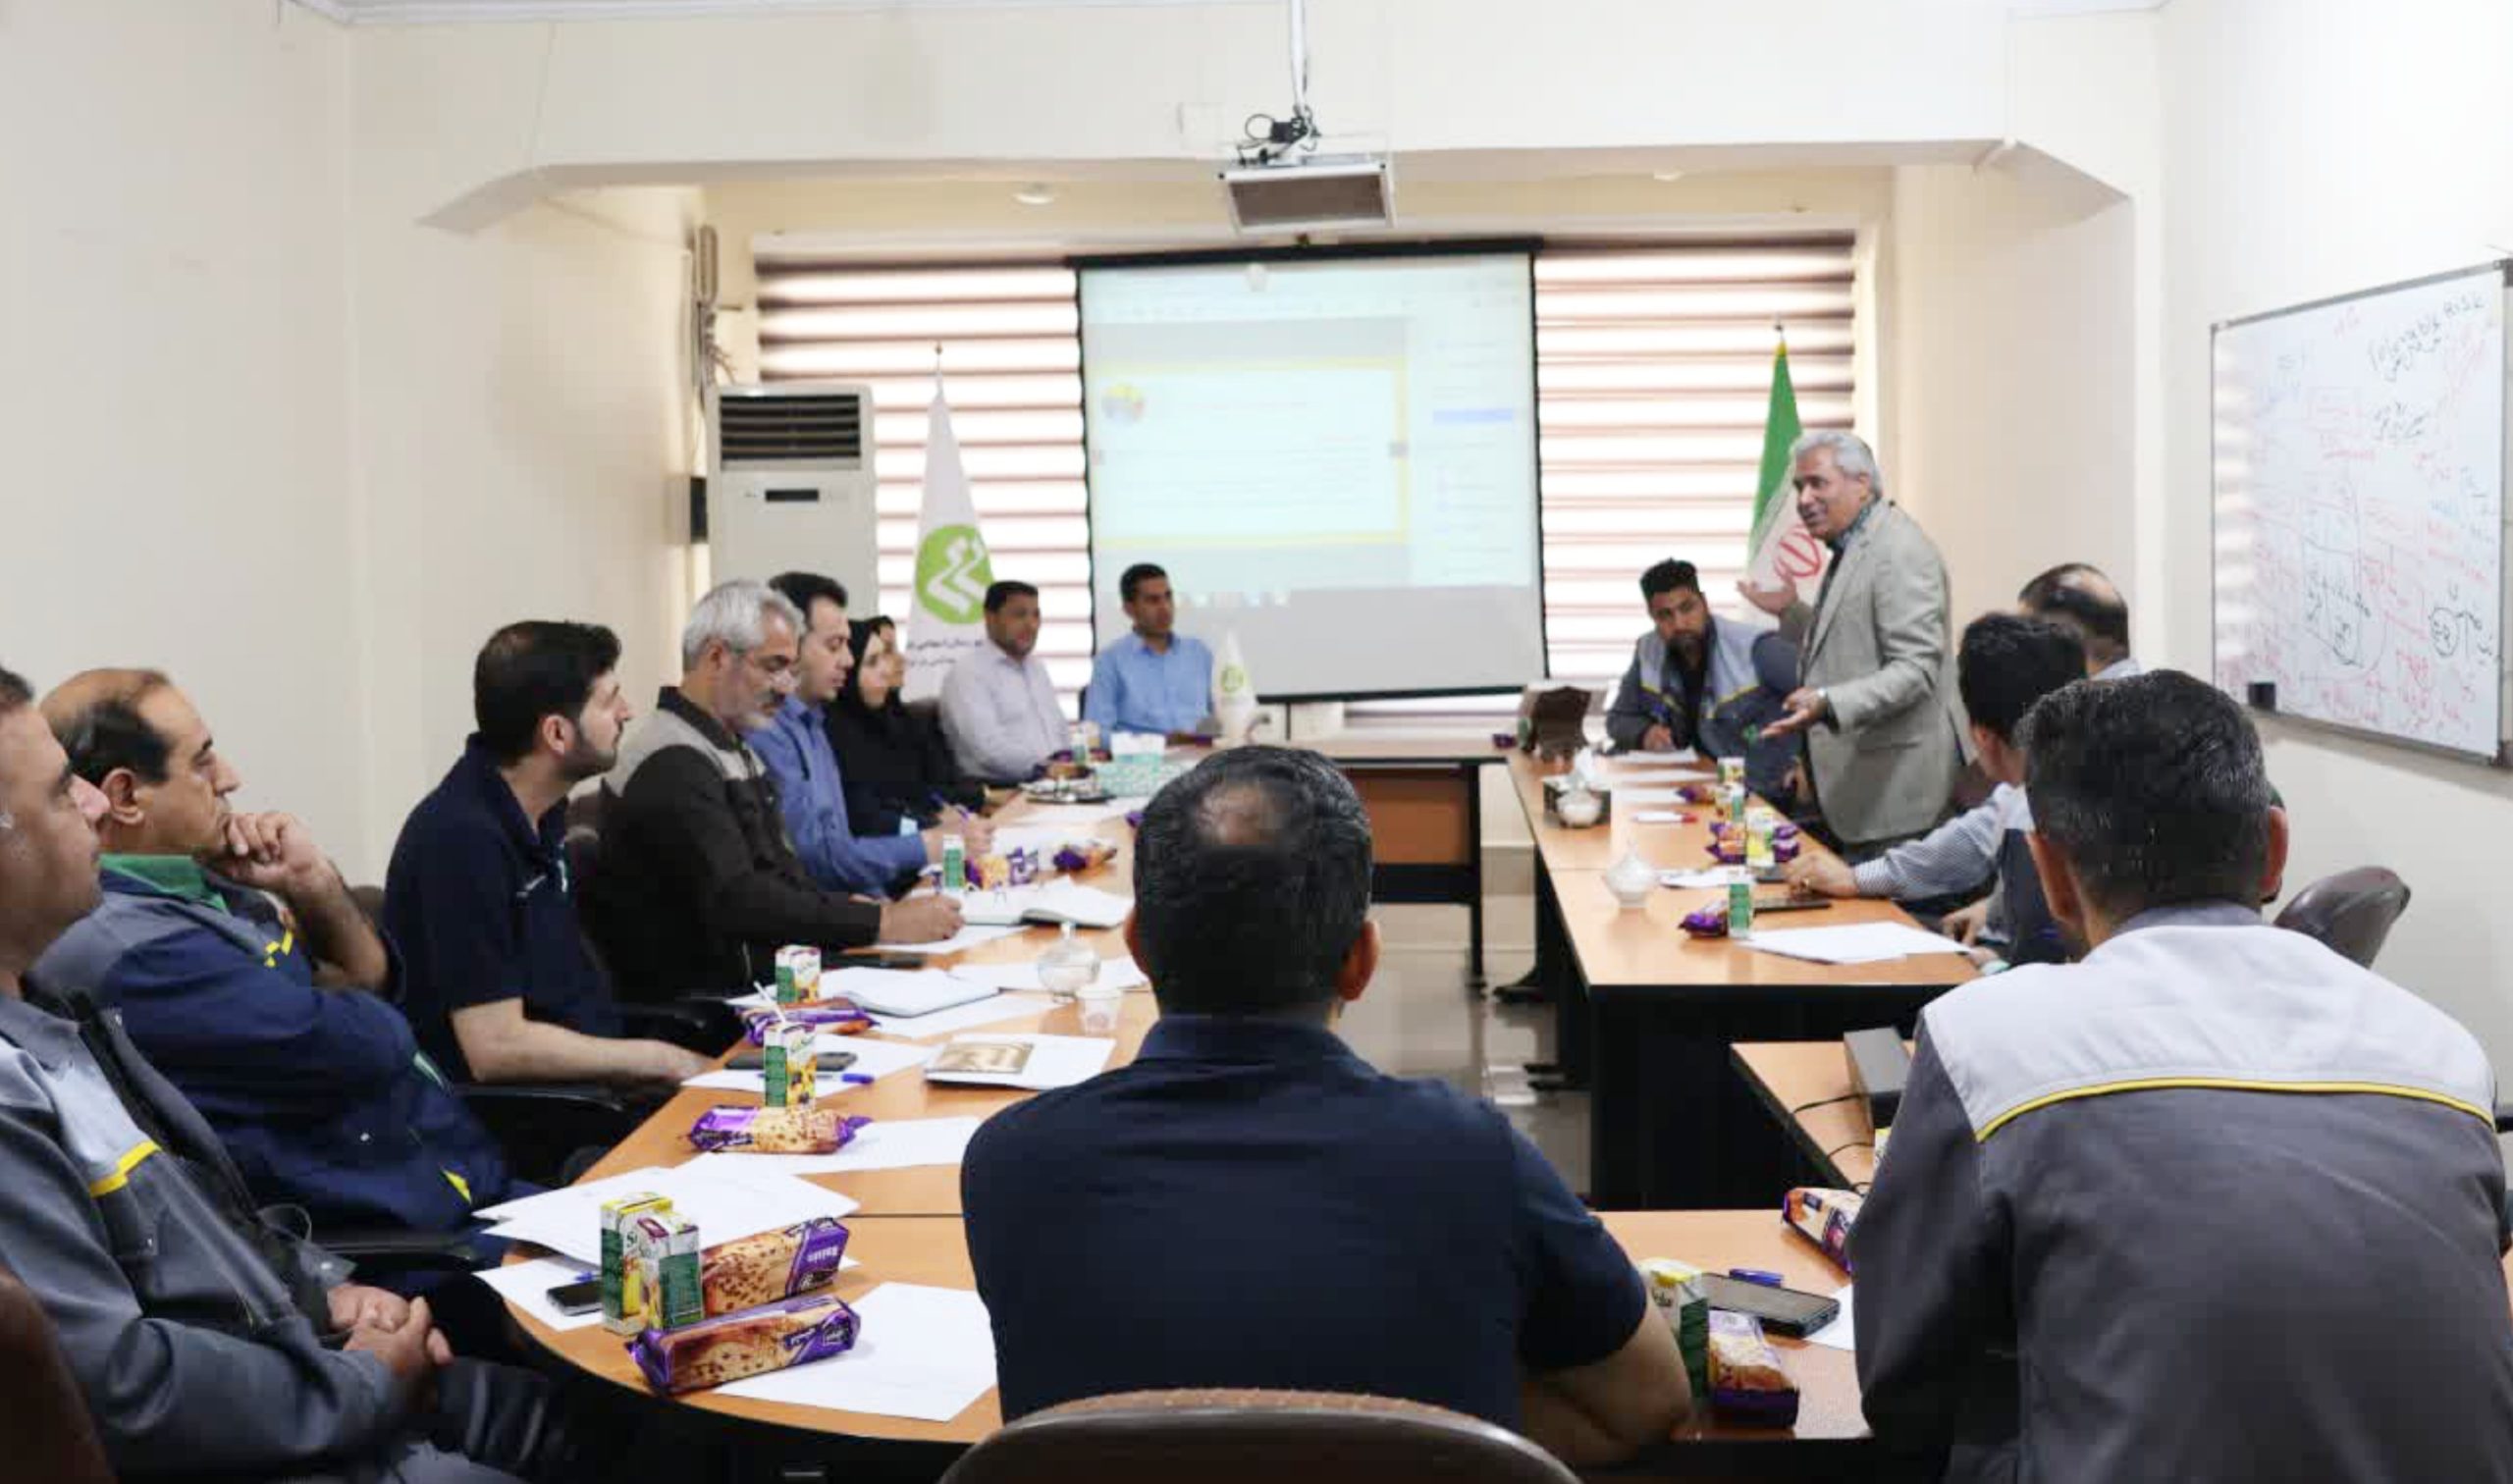 با حضور کارکنان صورت گرفت؛ برگزاری کارگاه آموزشی مدیریت ریسک در شرکت حریر خوزستان